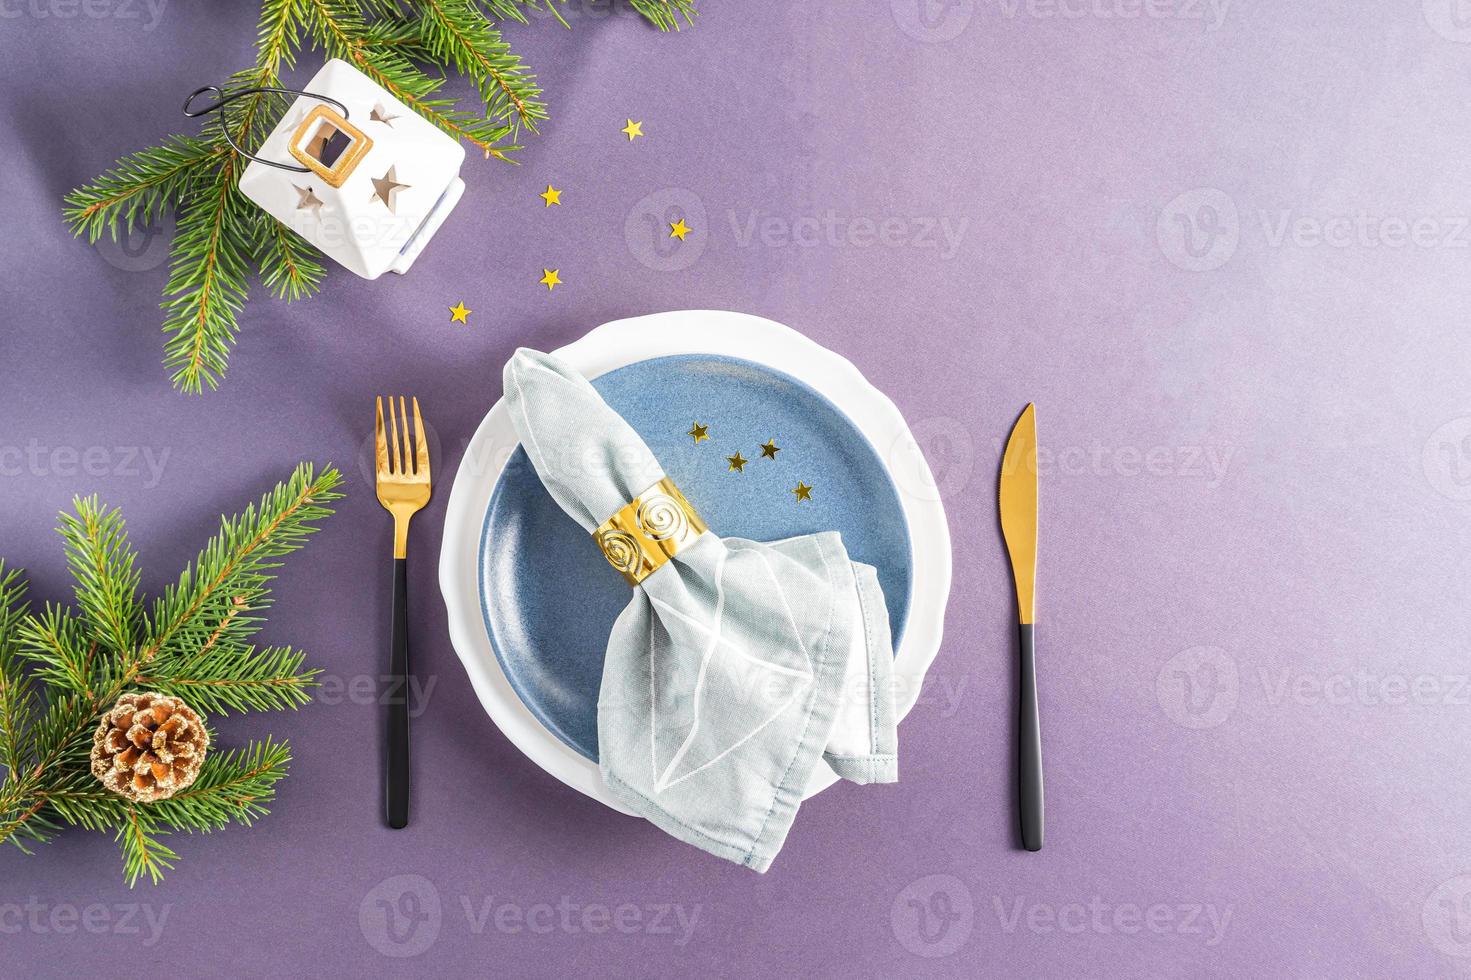 mettre la table de fête pour le nouvel an et noël. assiettes et couverts, serviette en tissu avec décoration. vue de dessus. nappe grise. photo